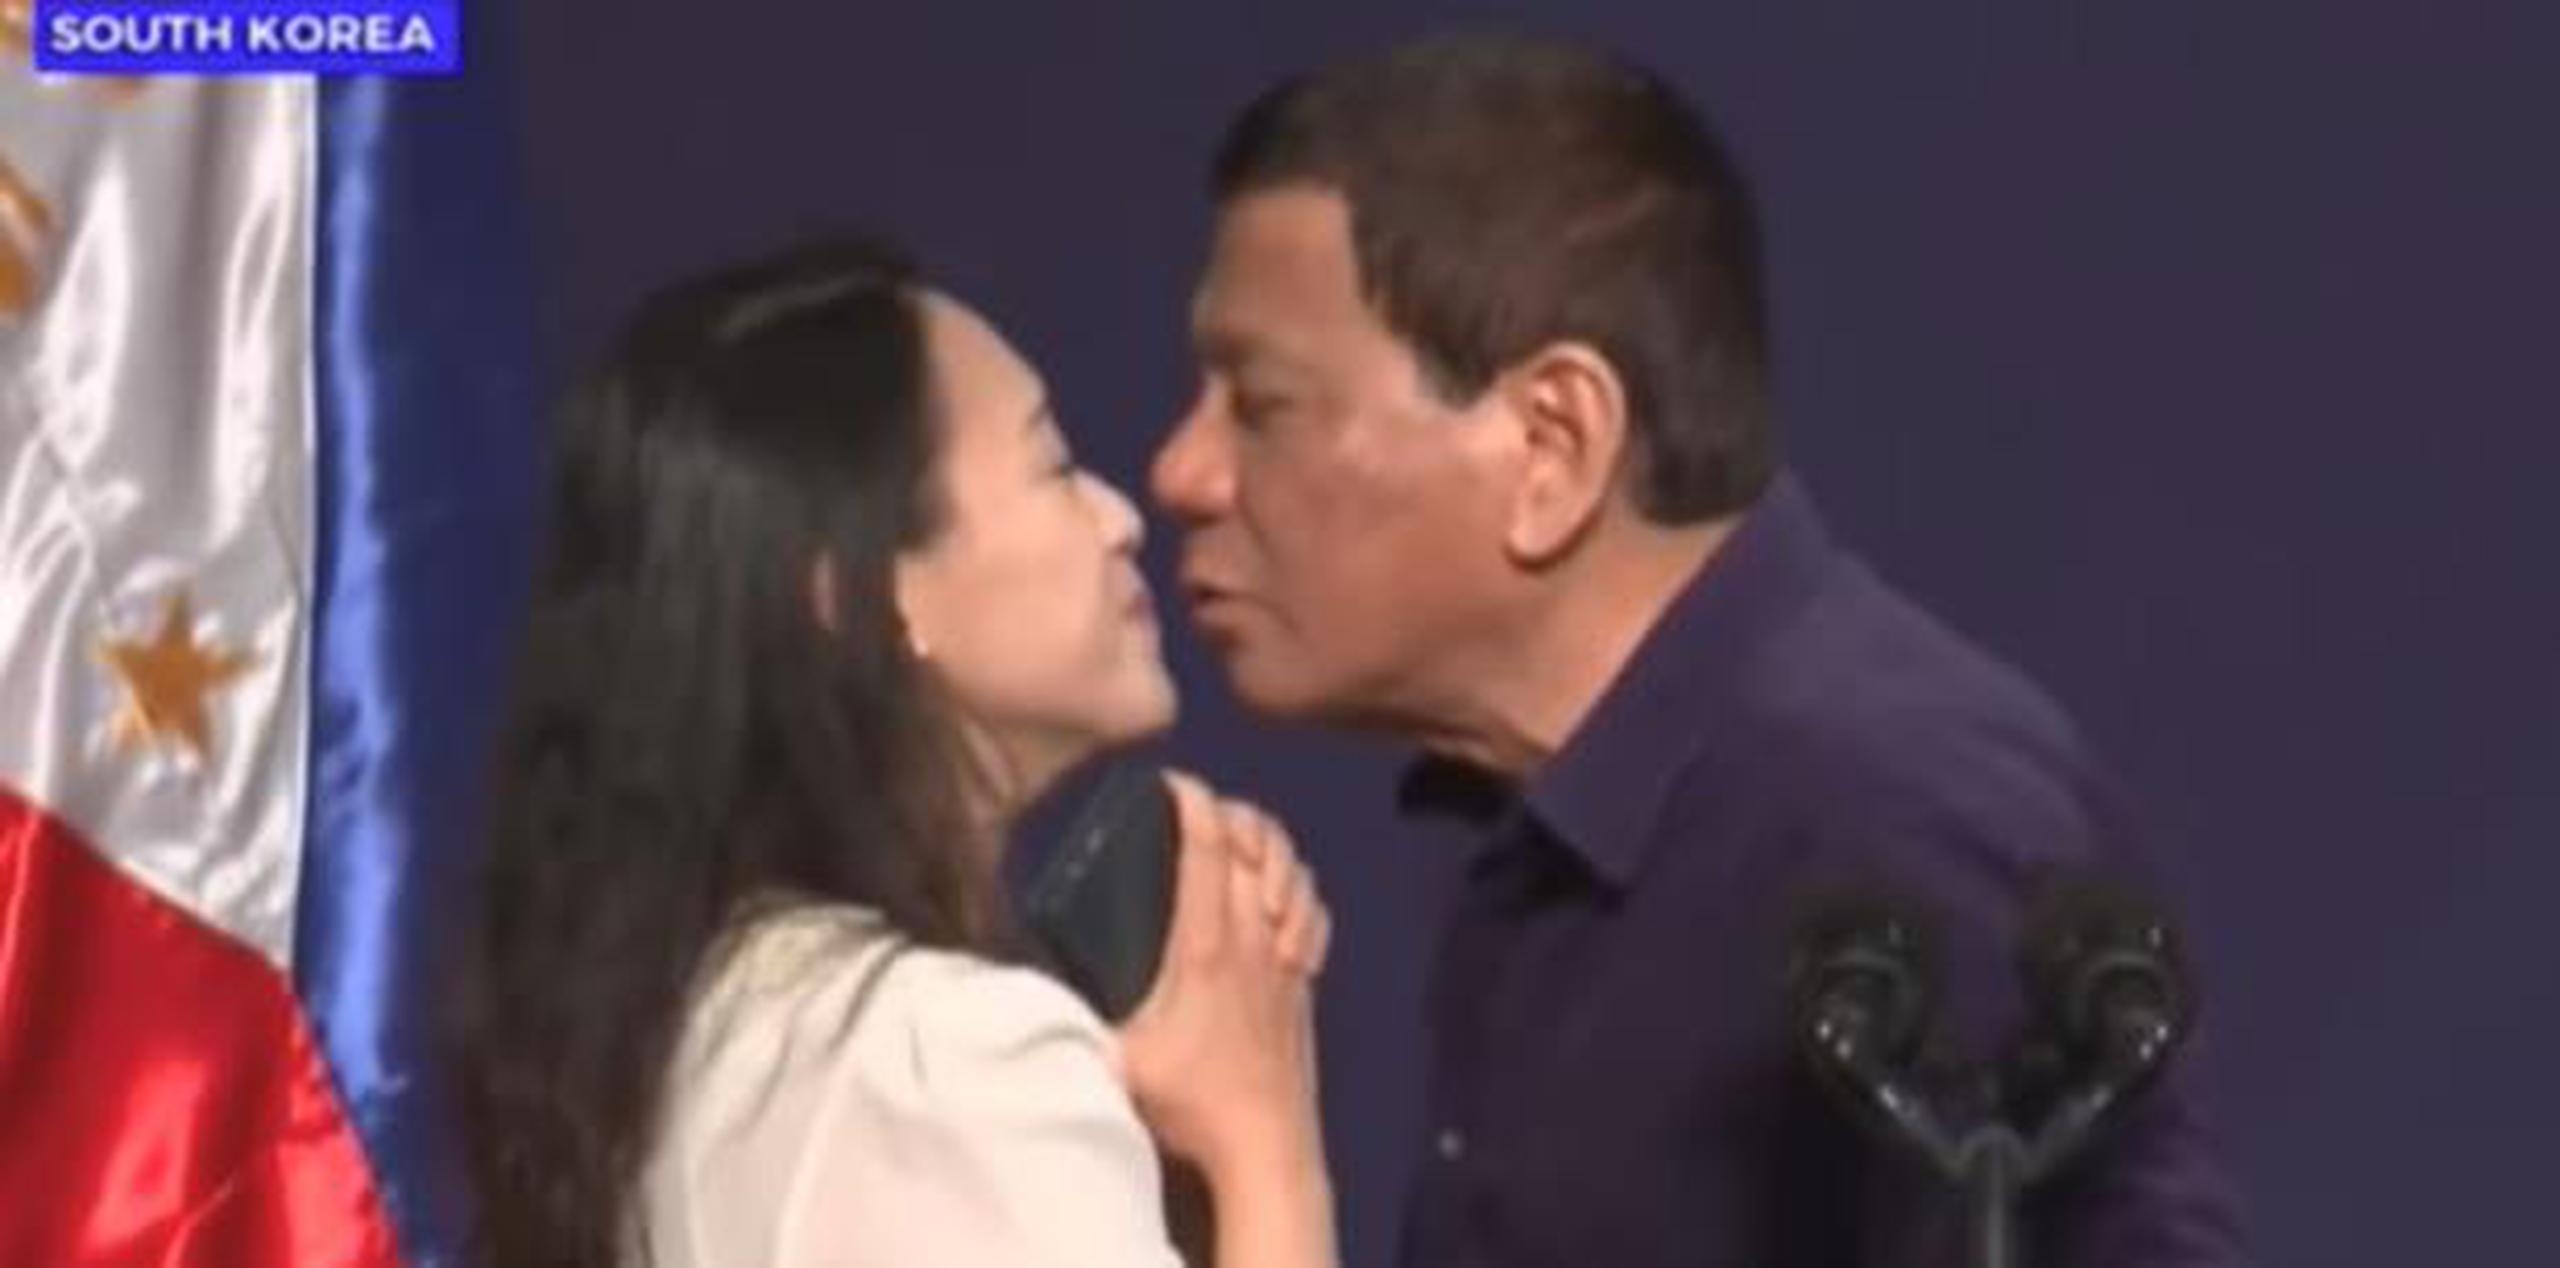 El beso se dio durante una visita de Rodrigo Duterte a Corea del Sur. (YouTube)